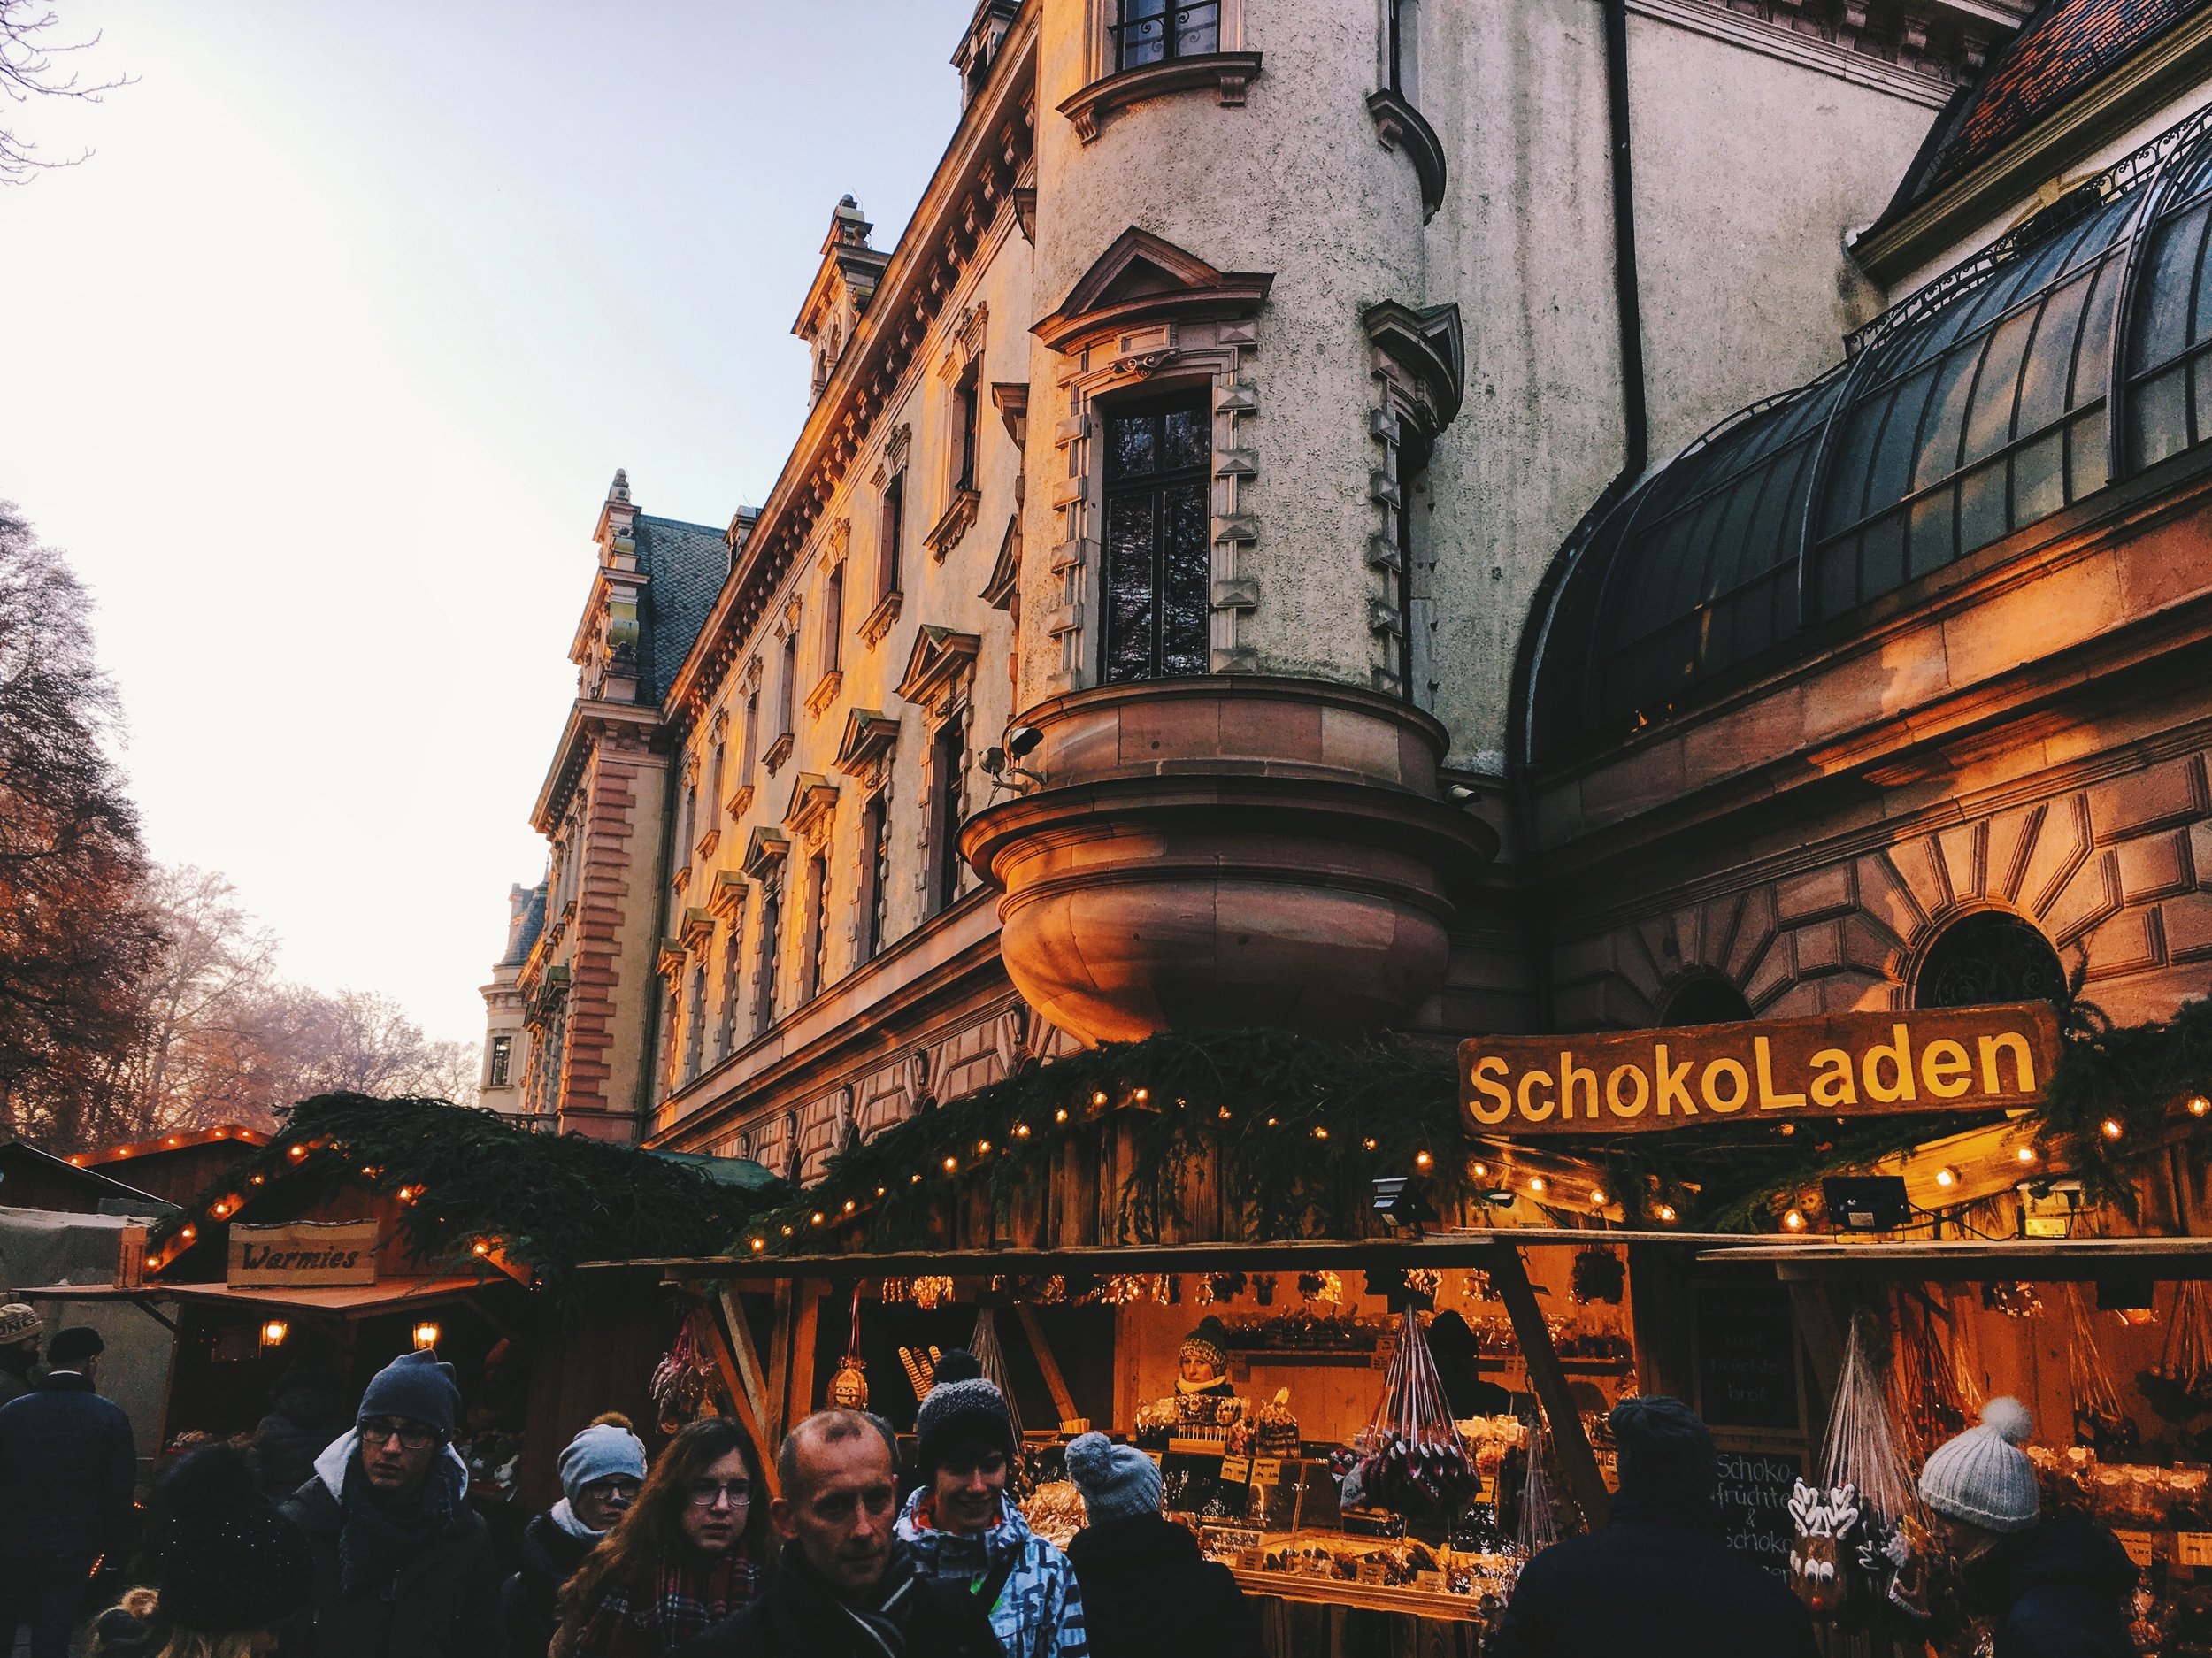 The Romantischer Weihnachtsmarkt (Romantic Christmas Market) in Regensburg,  Germany — living in cinnamon